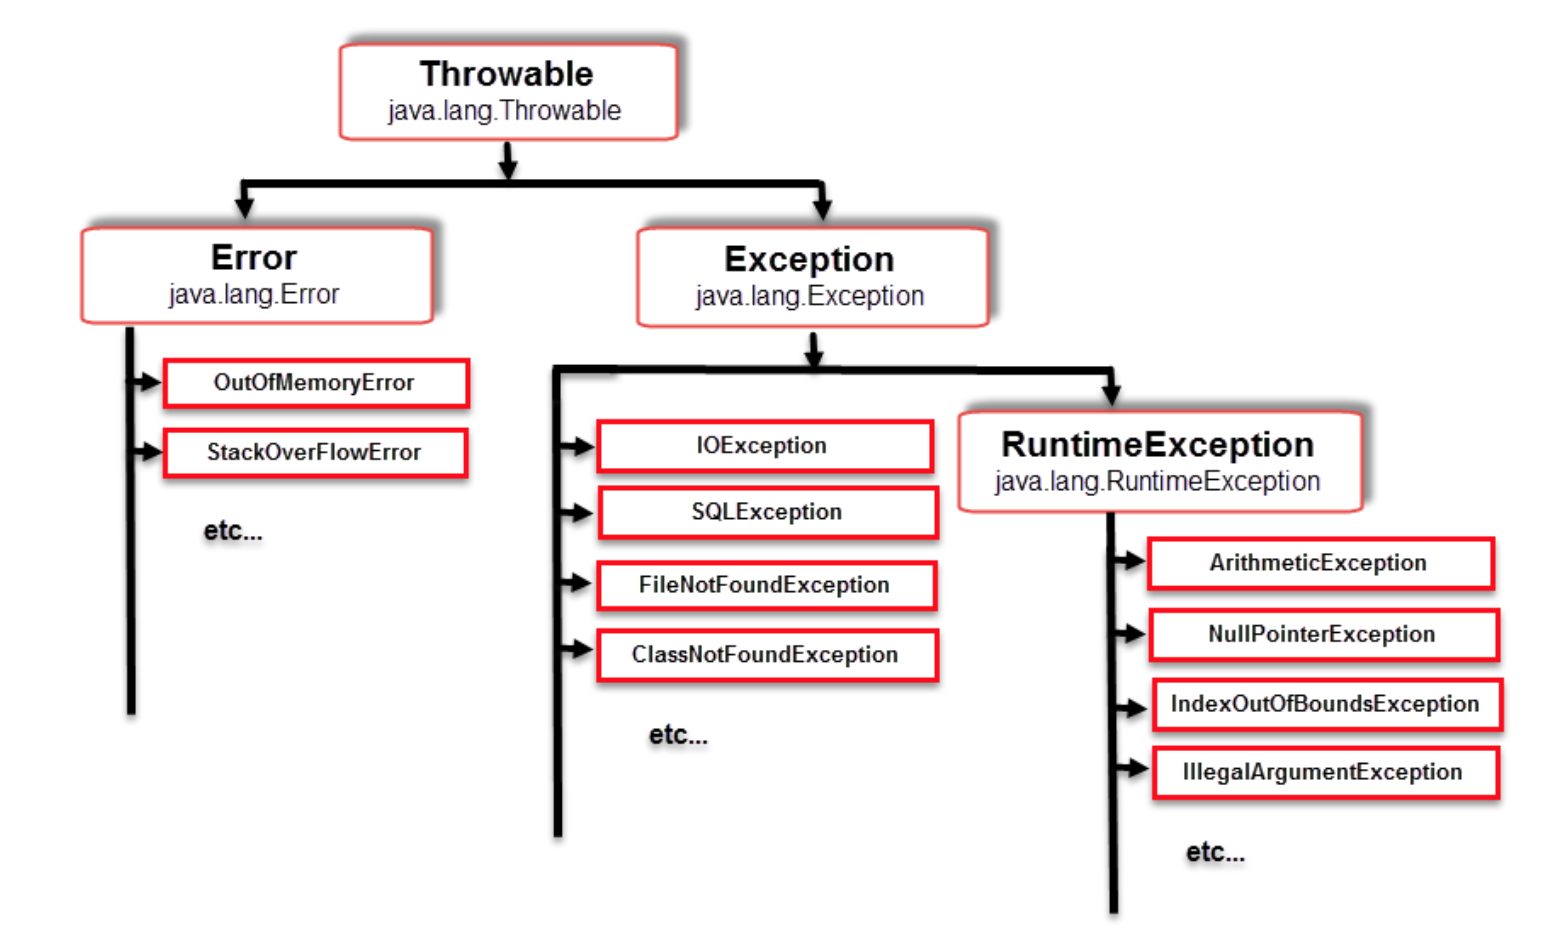 Java lang securityexception. Иерархия наследования исключений java. Структура исключений java. Таблица исключений java. Дерево исключений java.